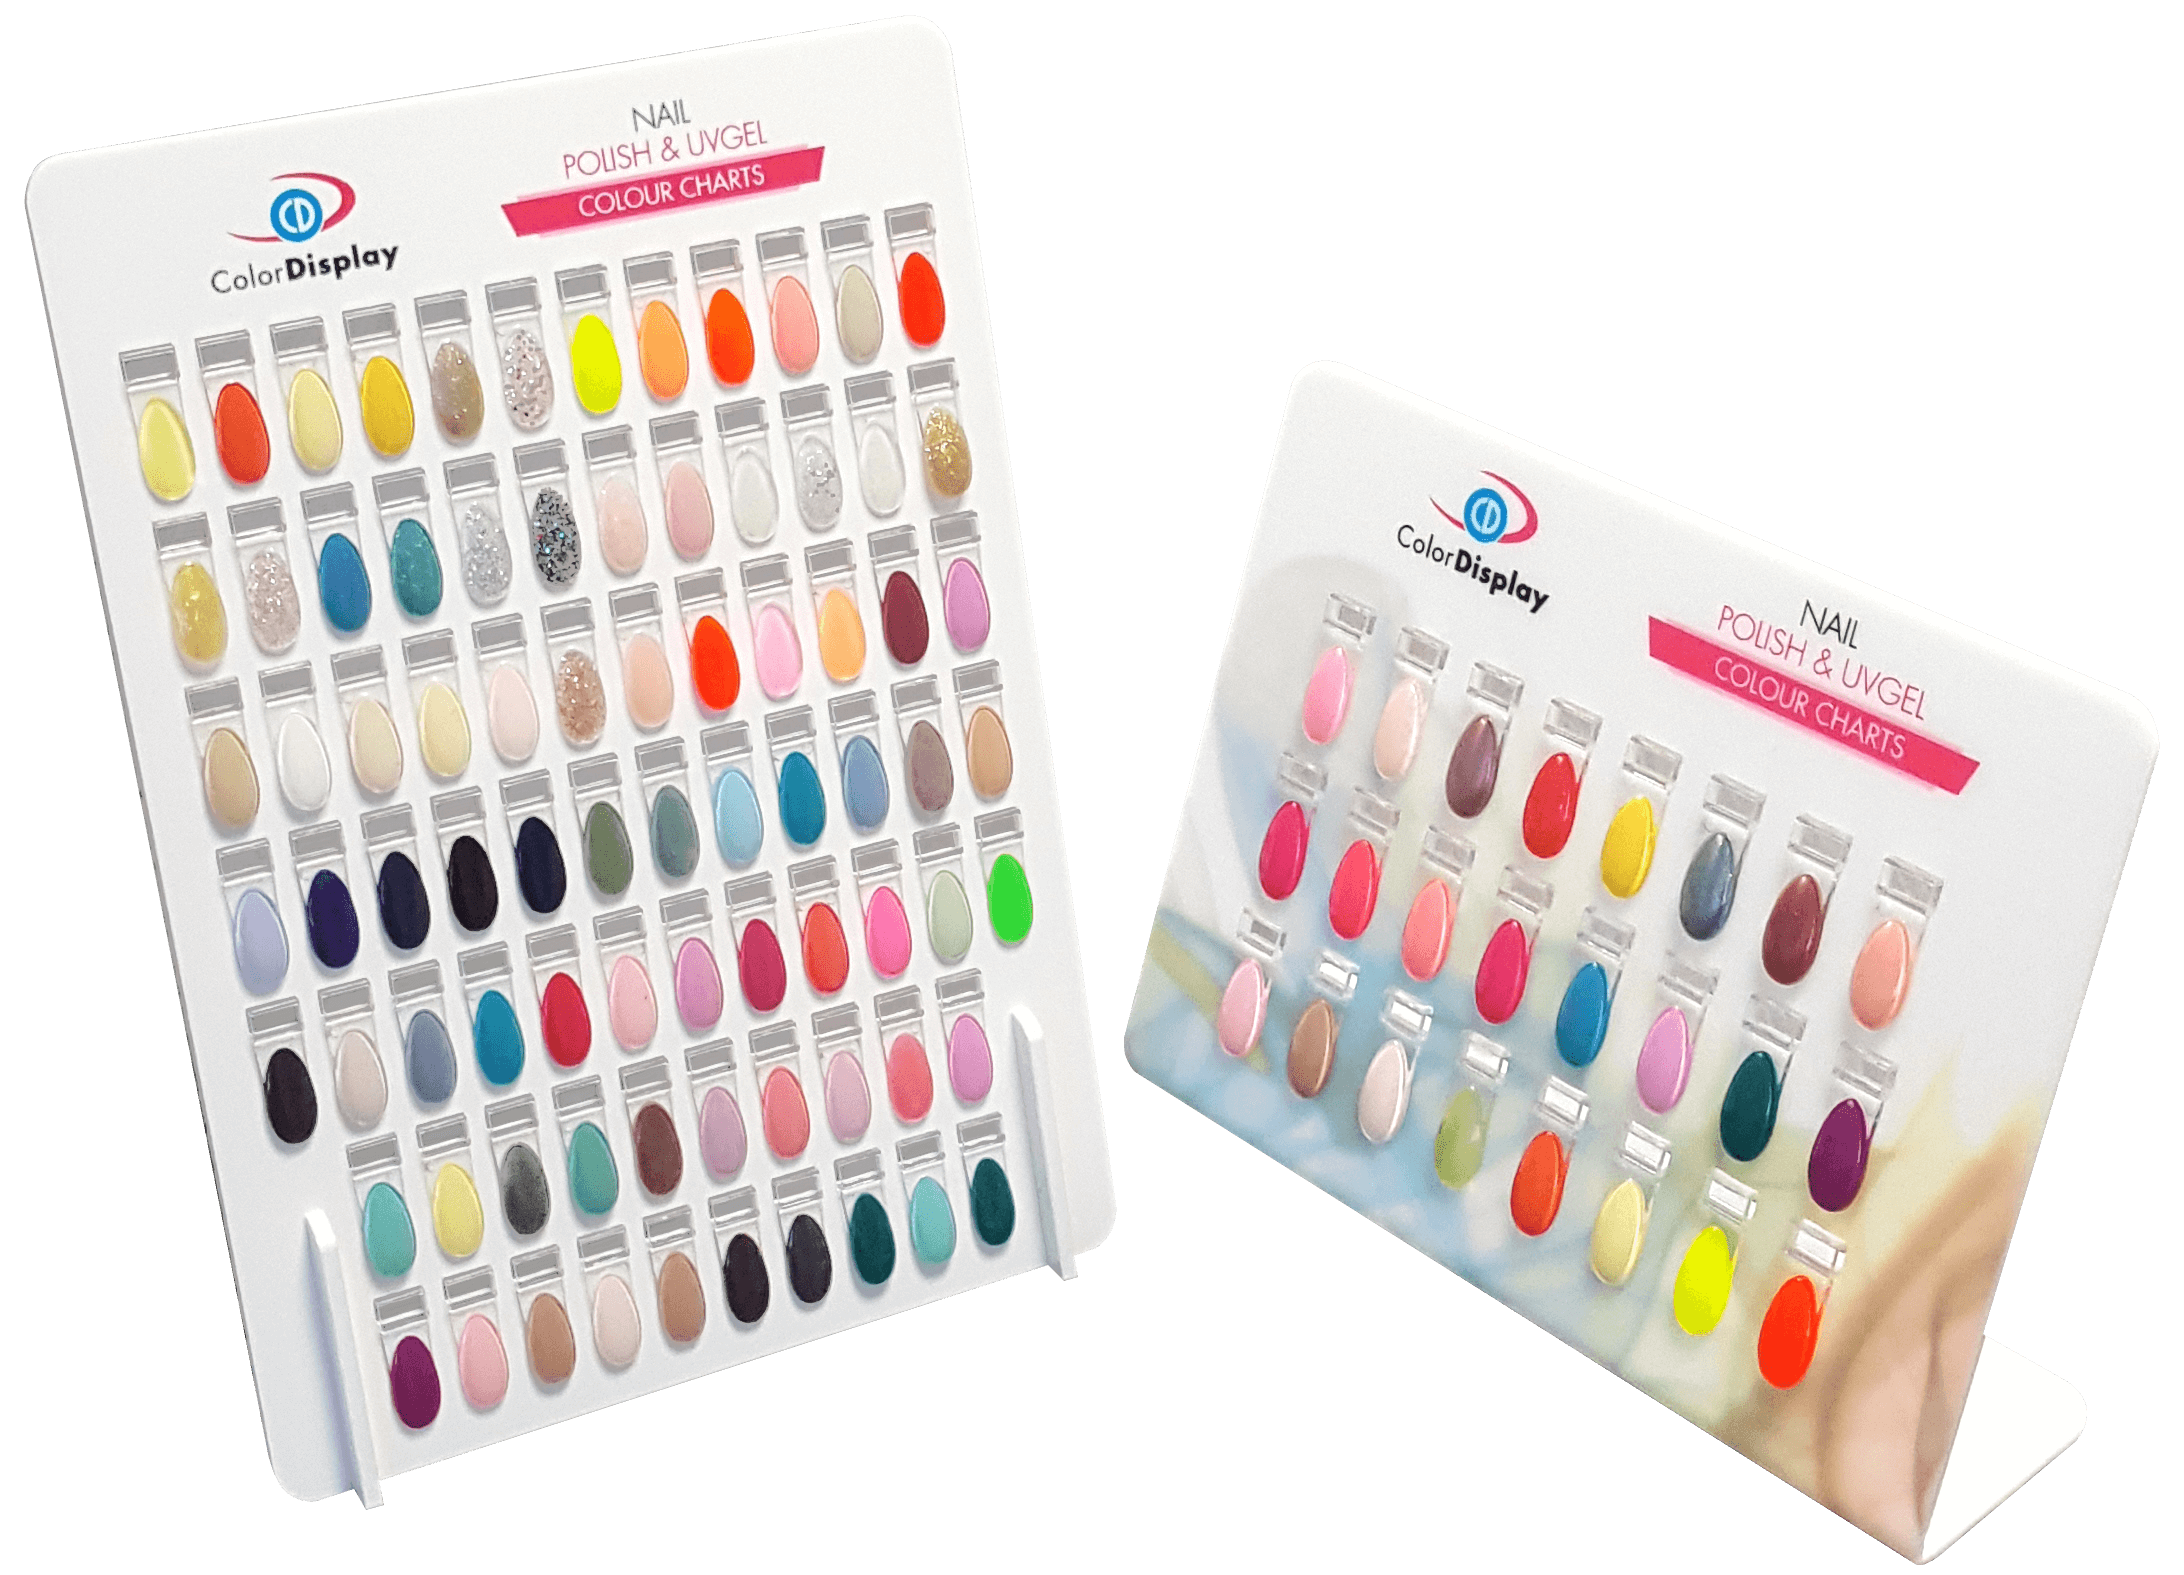 RX removable nail polish charts | ColorDisplay